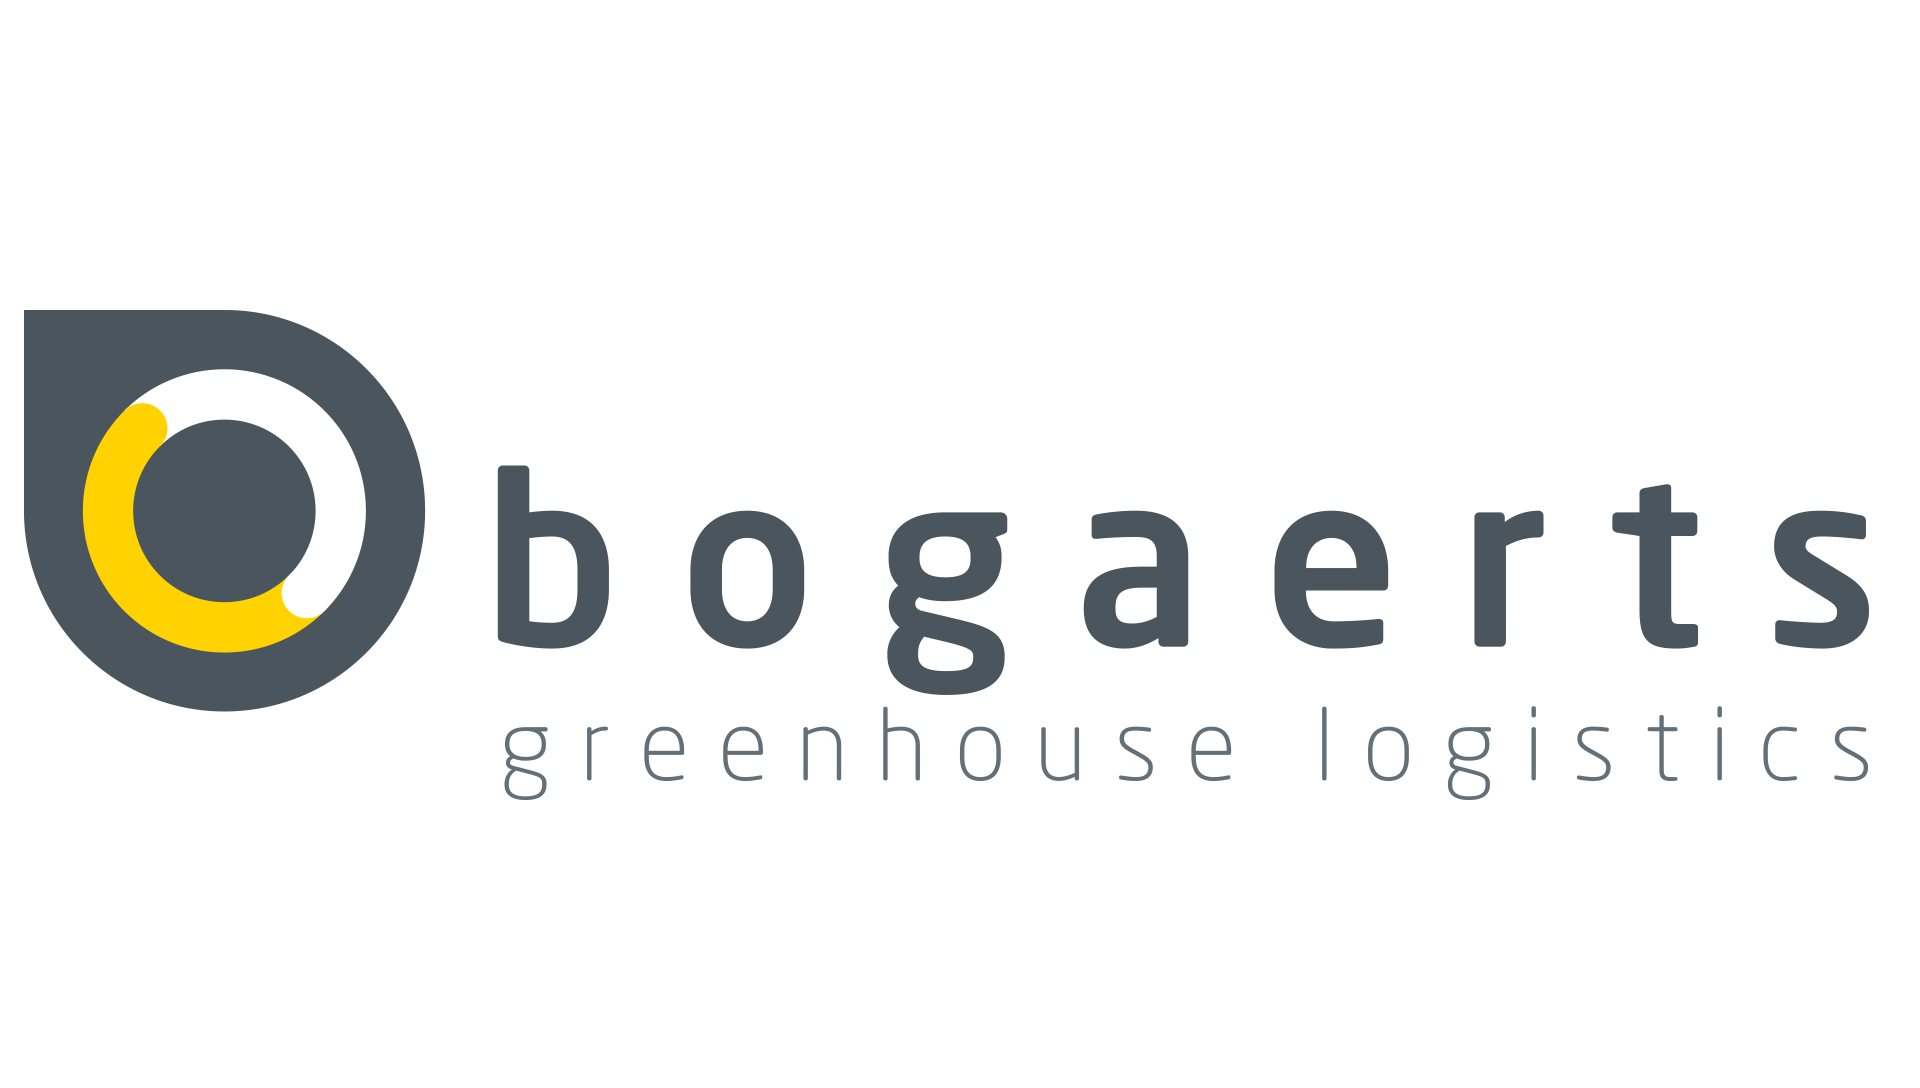 Bogaerts Greenhouse Logistics Logo